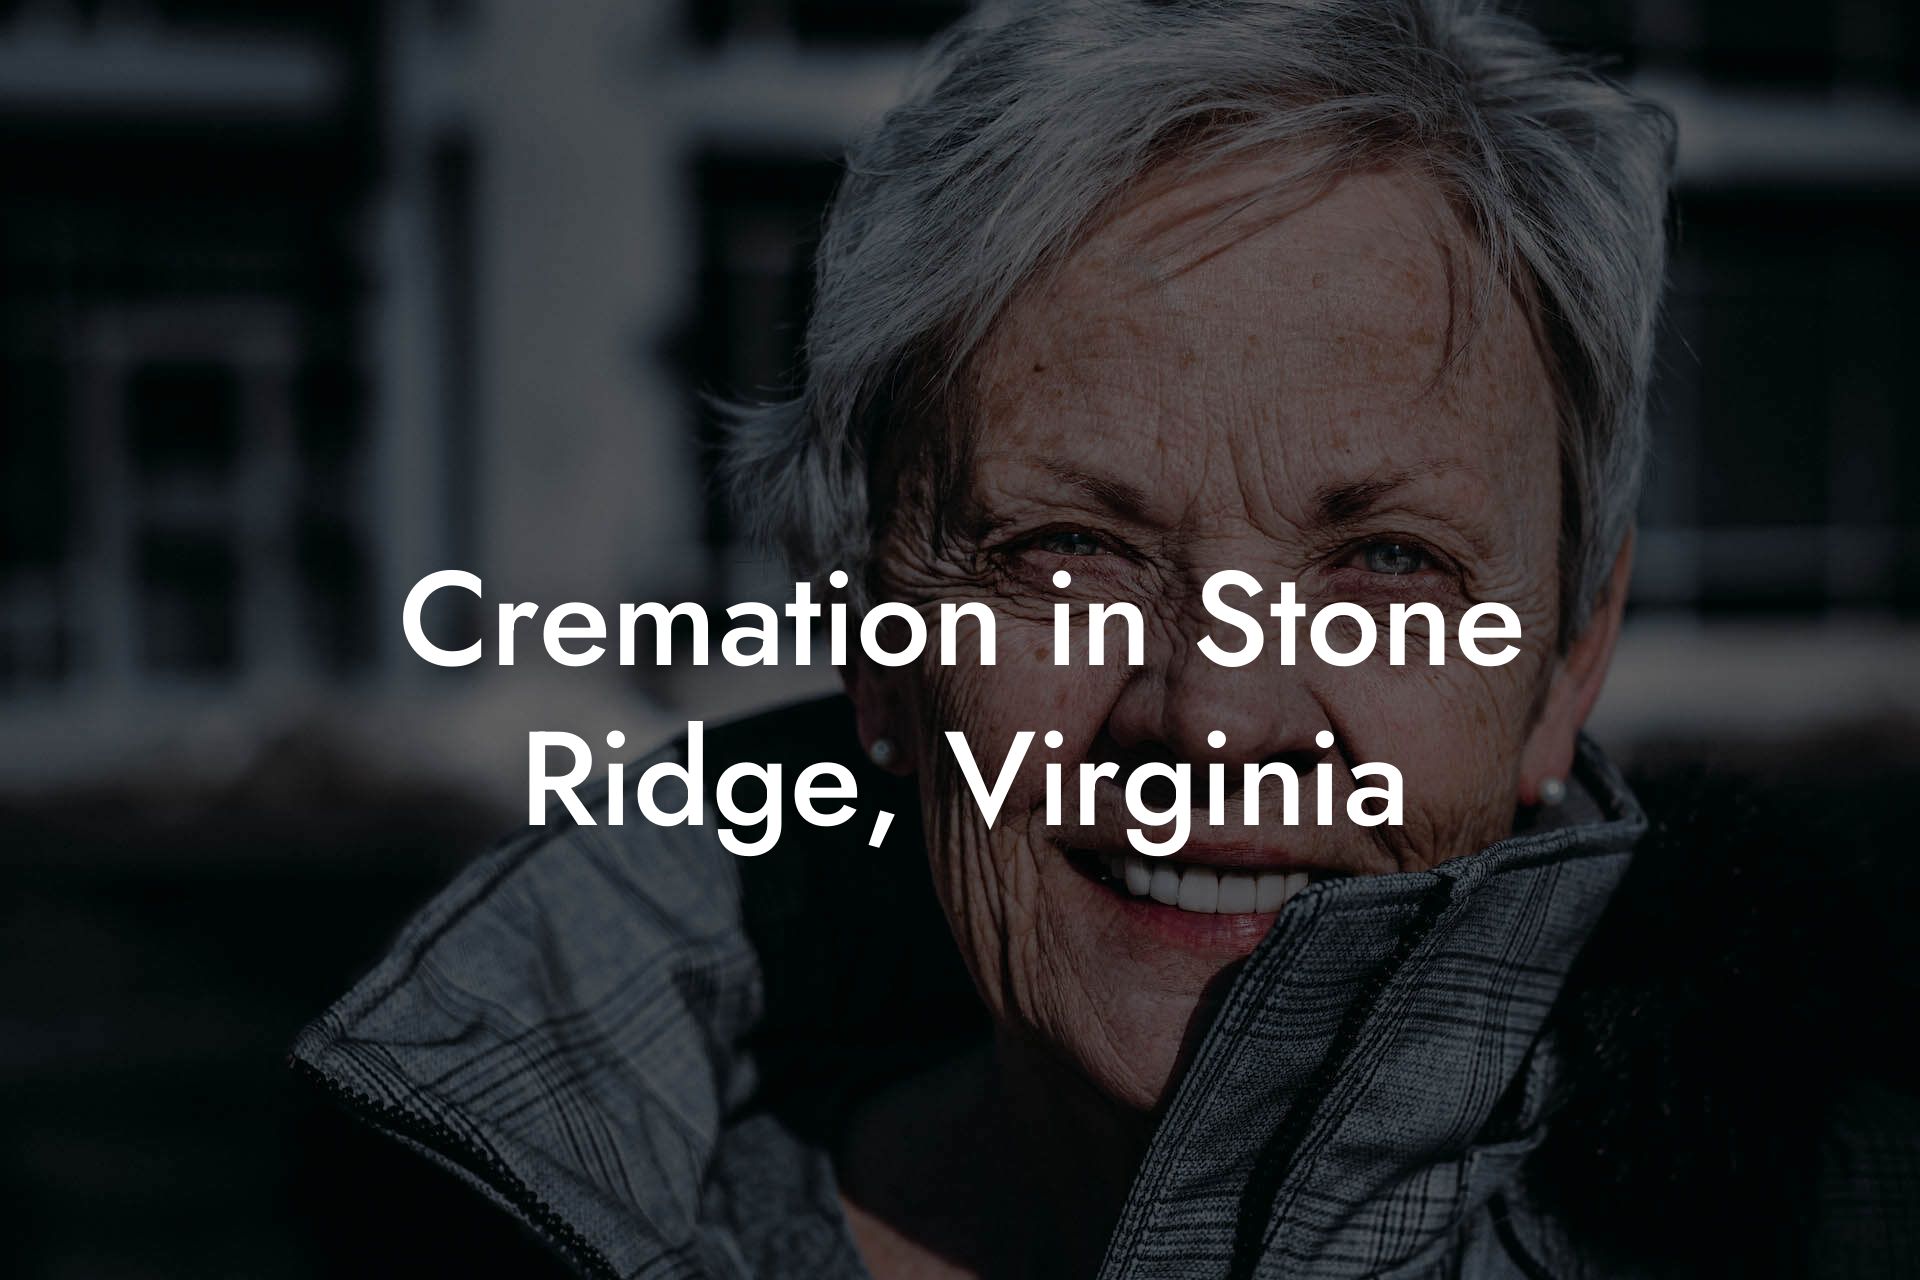 Cremation in Stone Ridge, Virginia